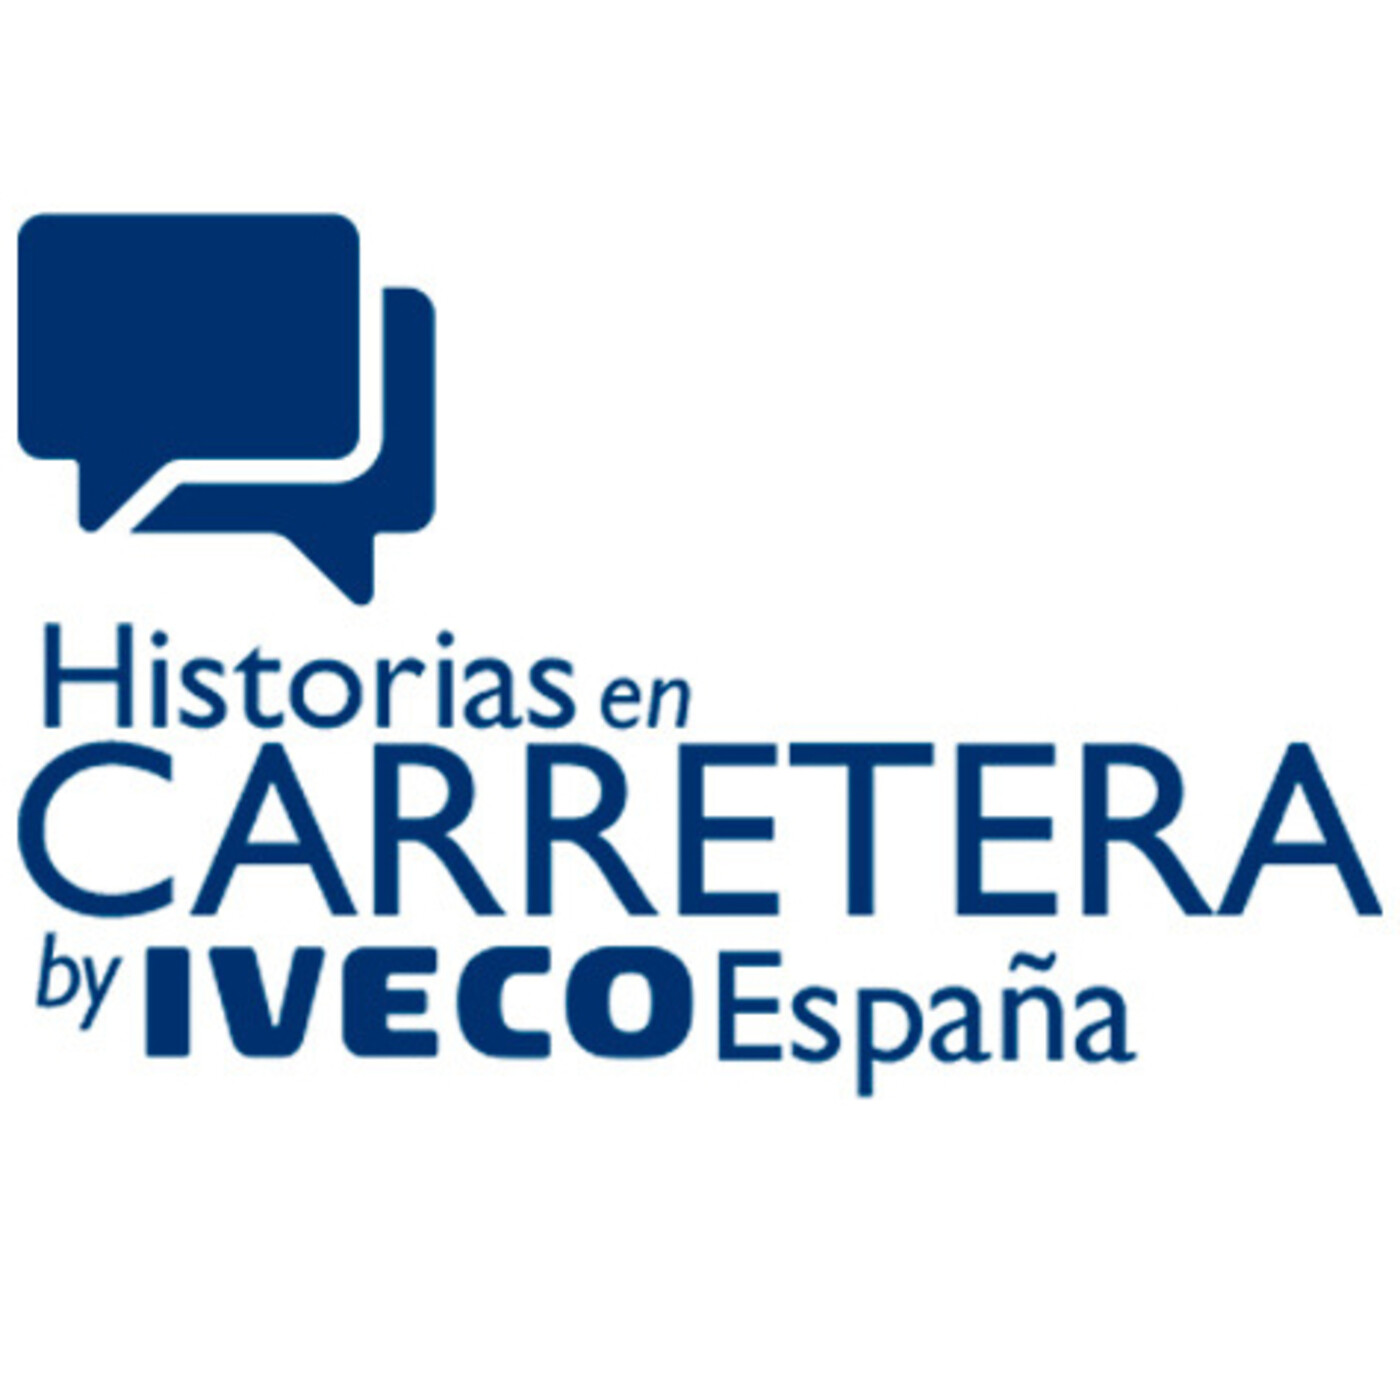 Historias en carretera by IVECO España